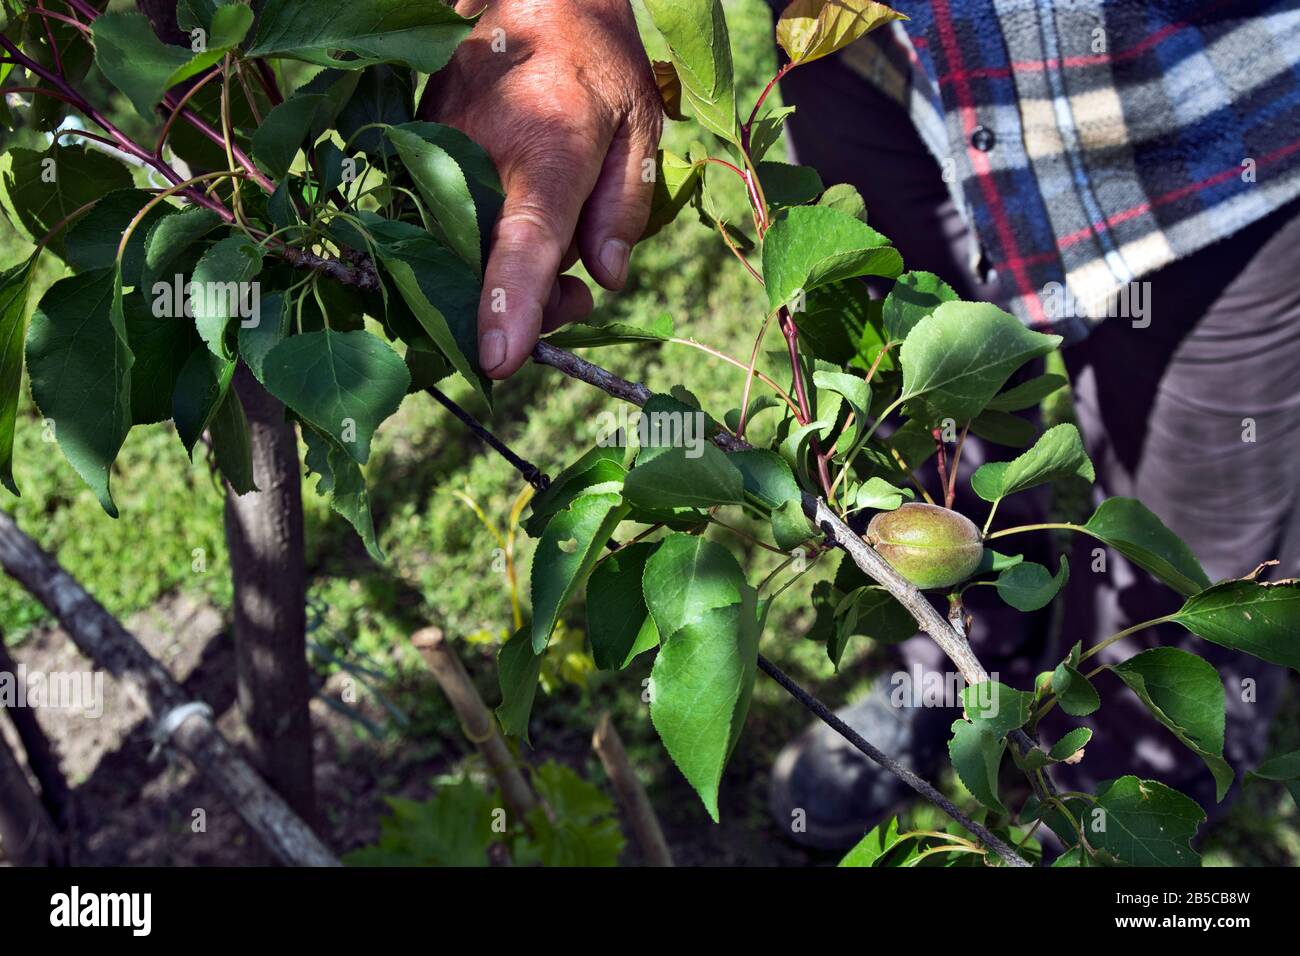 Contadino, osserva la qualità del frutto di albicocca giovane, cruda, immatura. Foto Stock